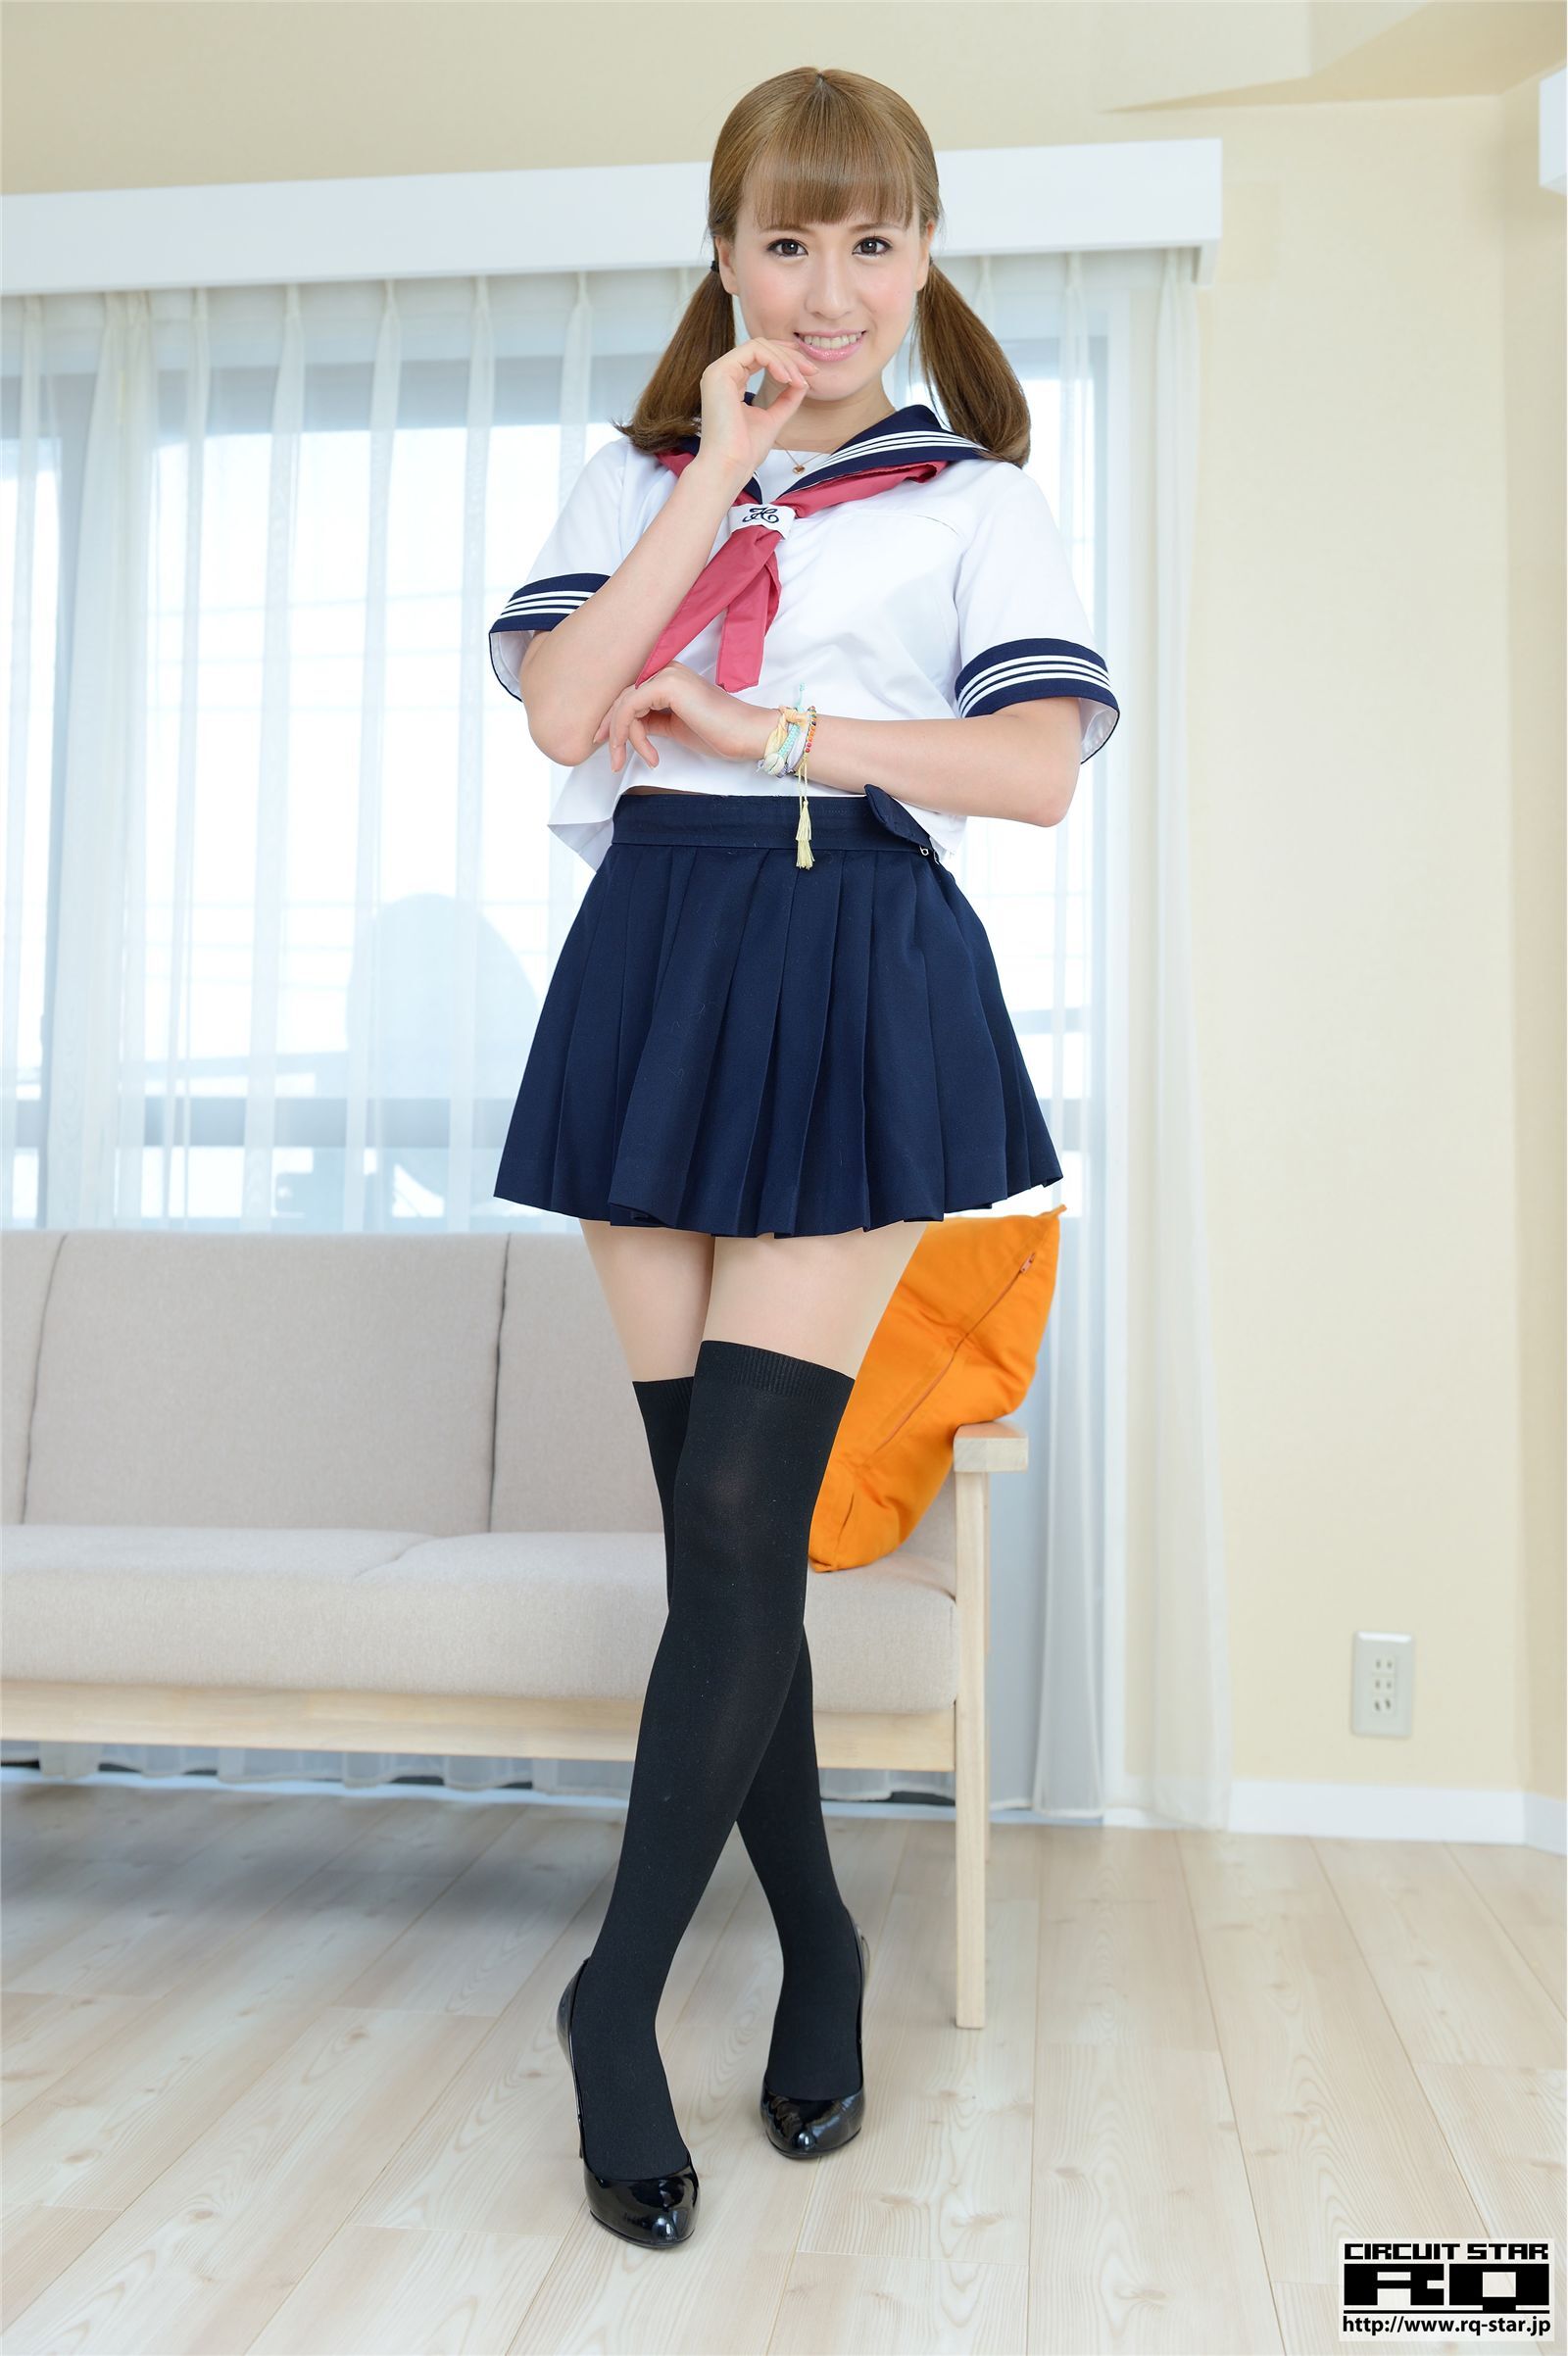 [rq-star] 2014.09.15 no.00943 nozomi Misaki school girl